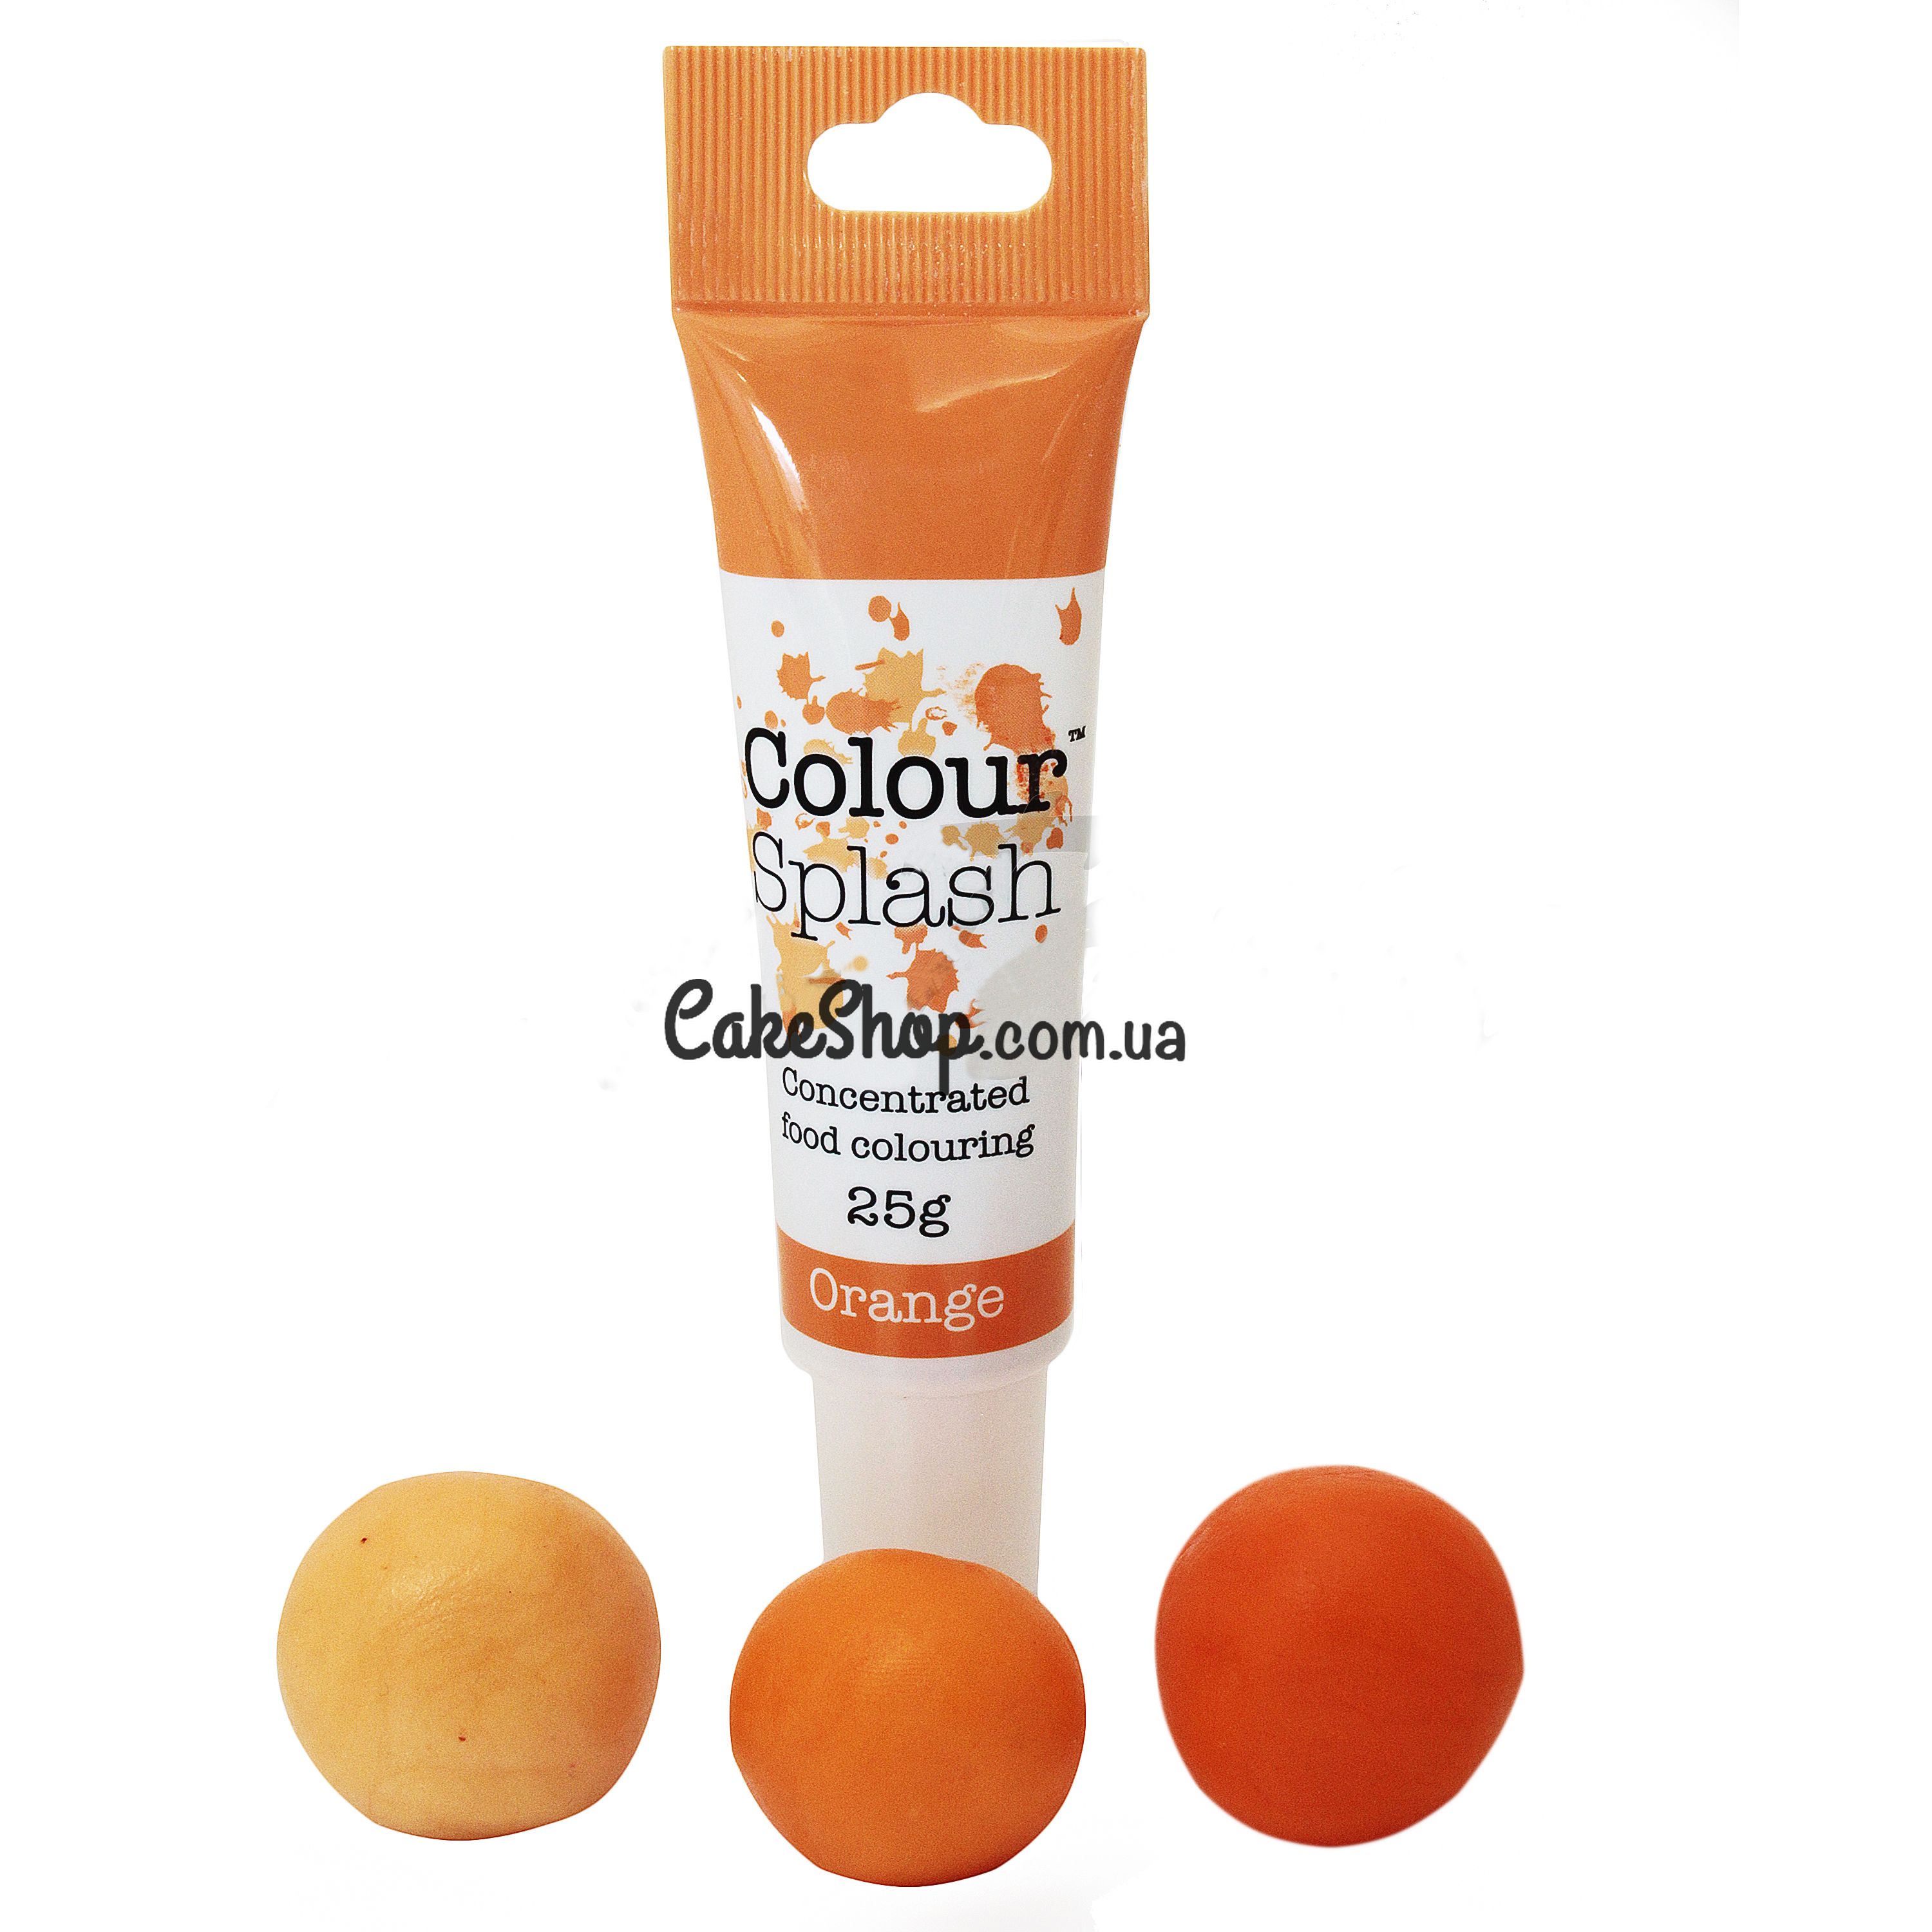 ⋗ Гелевый краситель Colour Splash, 25 г Orange купить в Украине ➛ CakeShop.com.ua, фото